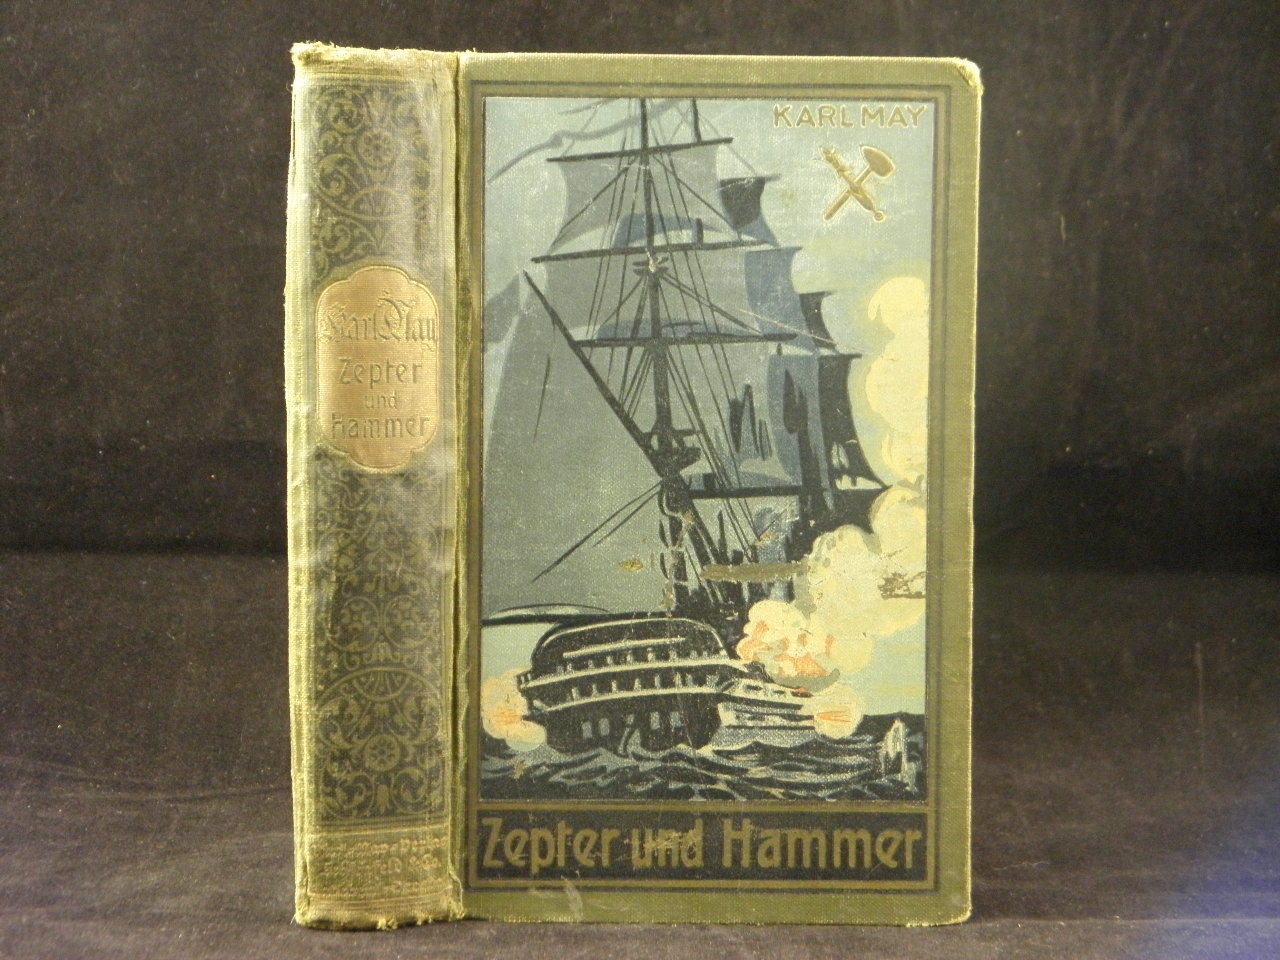 MAY, Karl: - Zepter und Hammer. Roman hrsg. von E.A. Schmid.